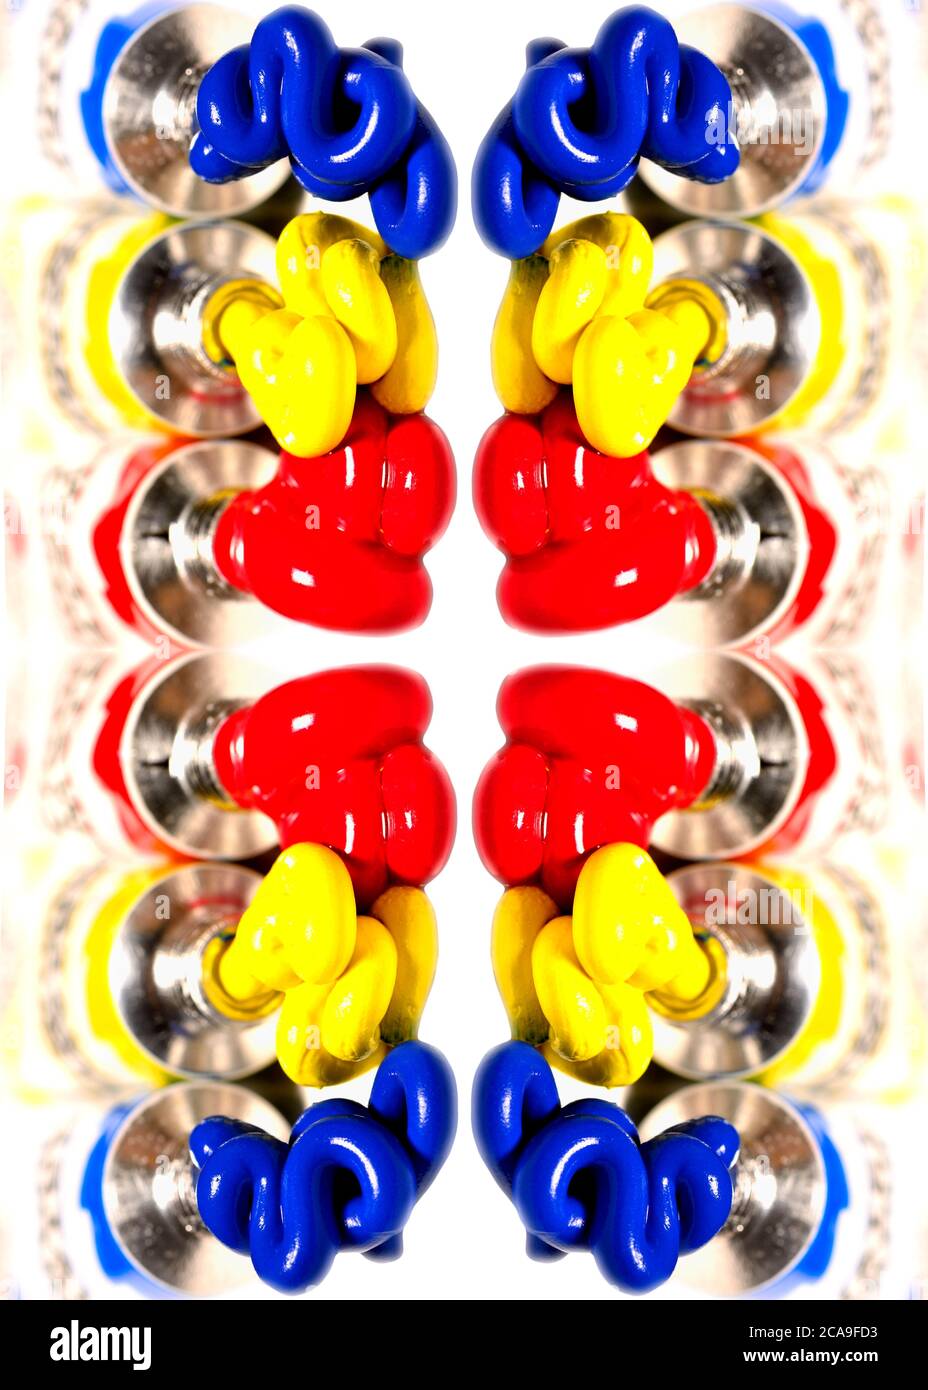 Couleurs primaires - peintures à l'aquarelle comprimées dans les tubes. Rouge, jaune, bleu Banque D'Images